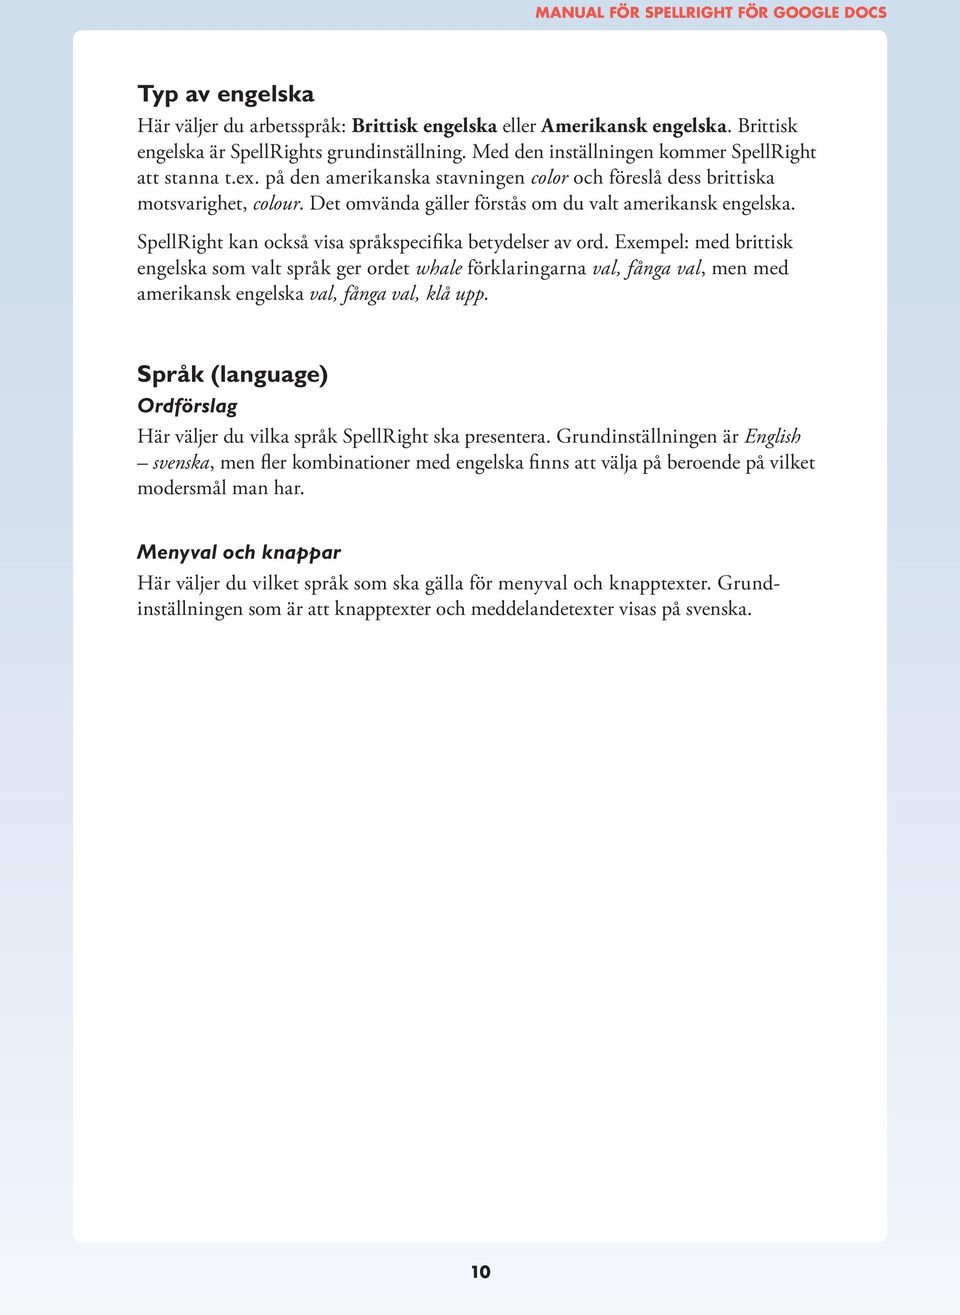 SpellRight kan också visa språkspecifika betydelser av ord.